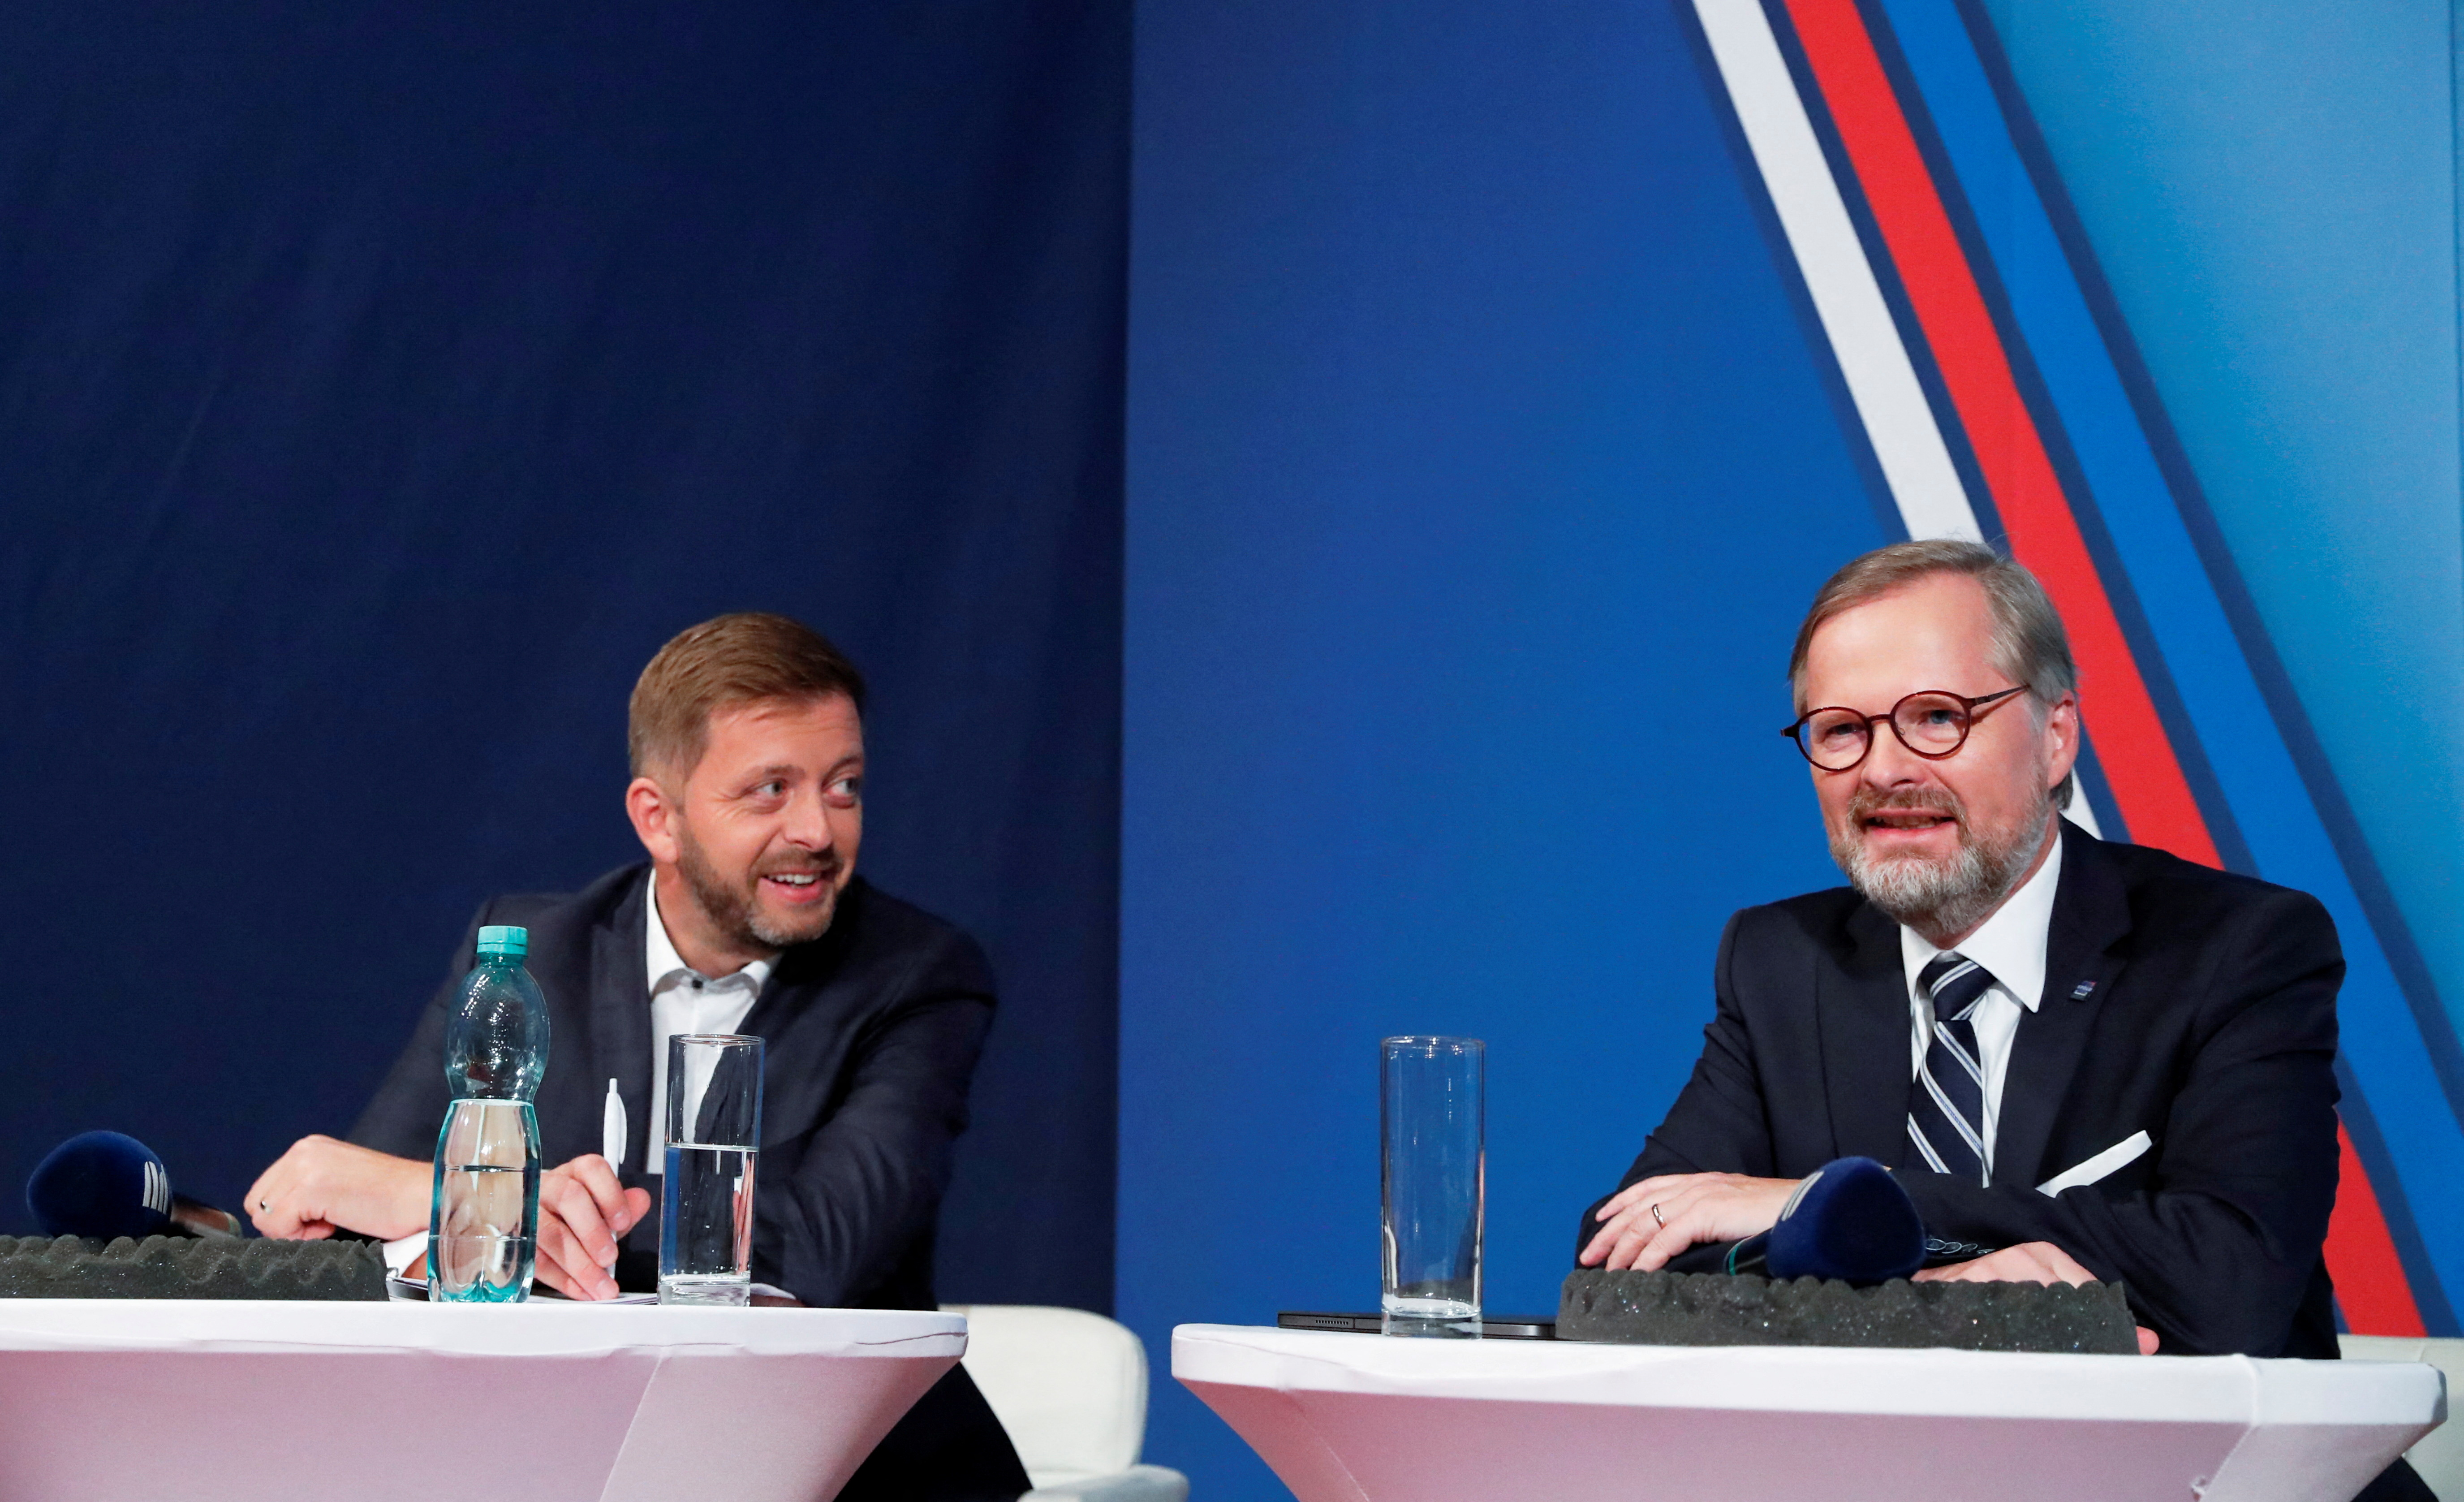 Leaders of political parties attend the radio debate in Prague